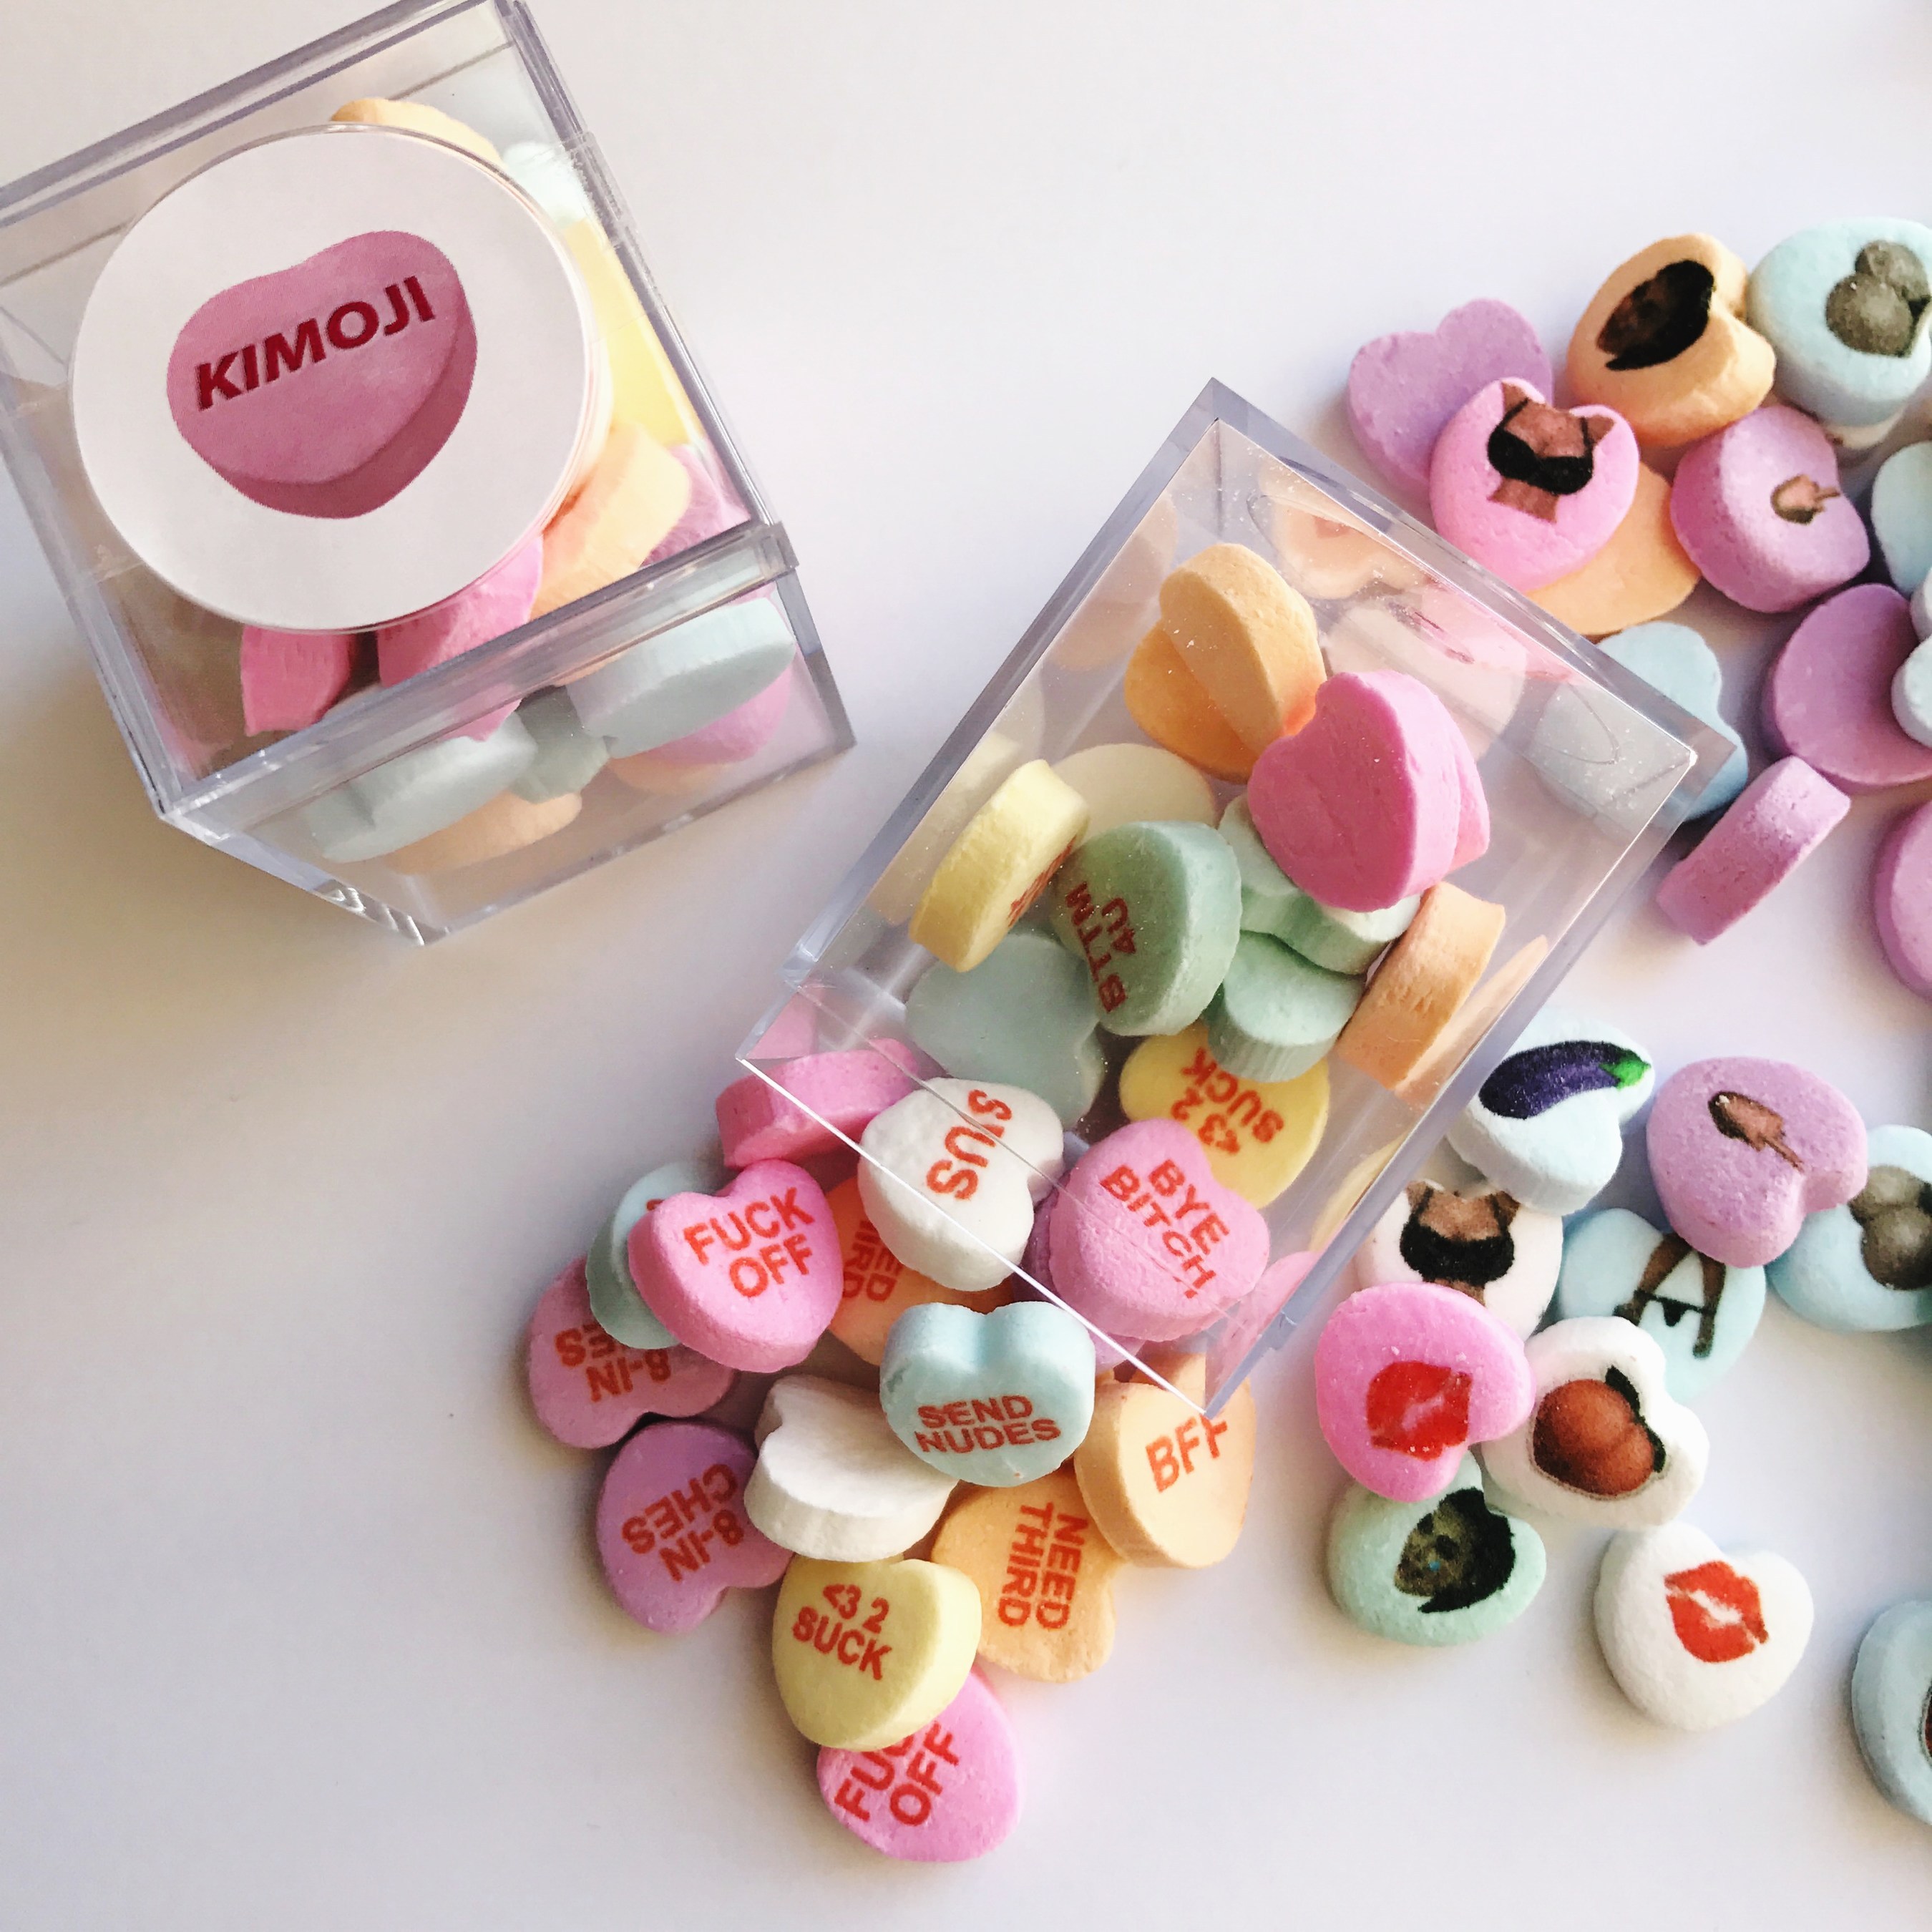 custom candy hearts